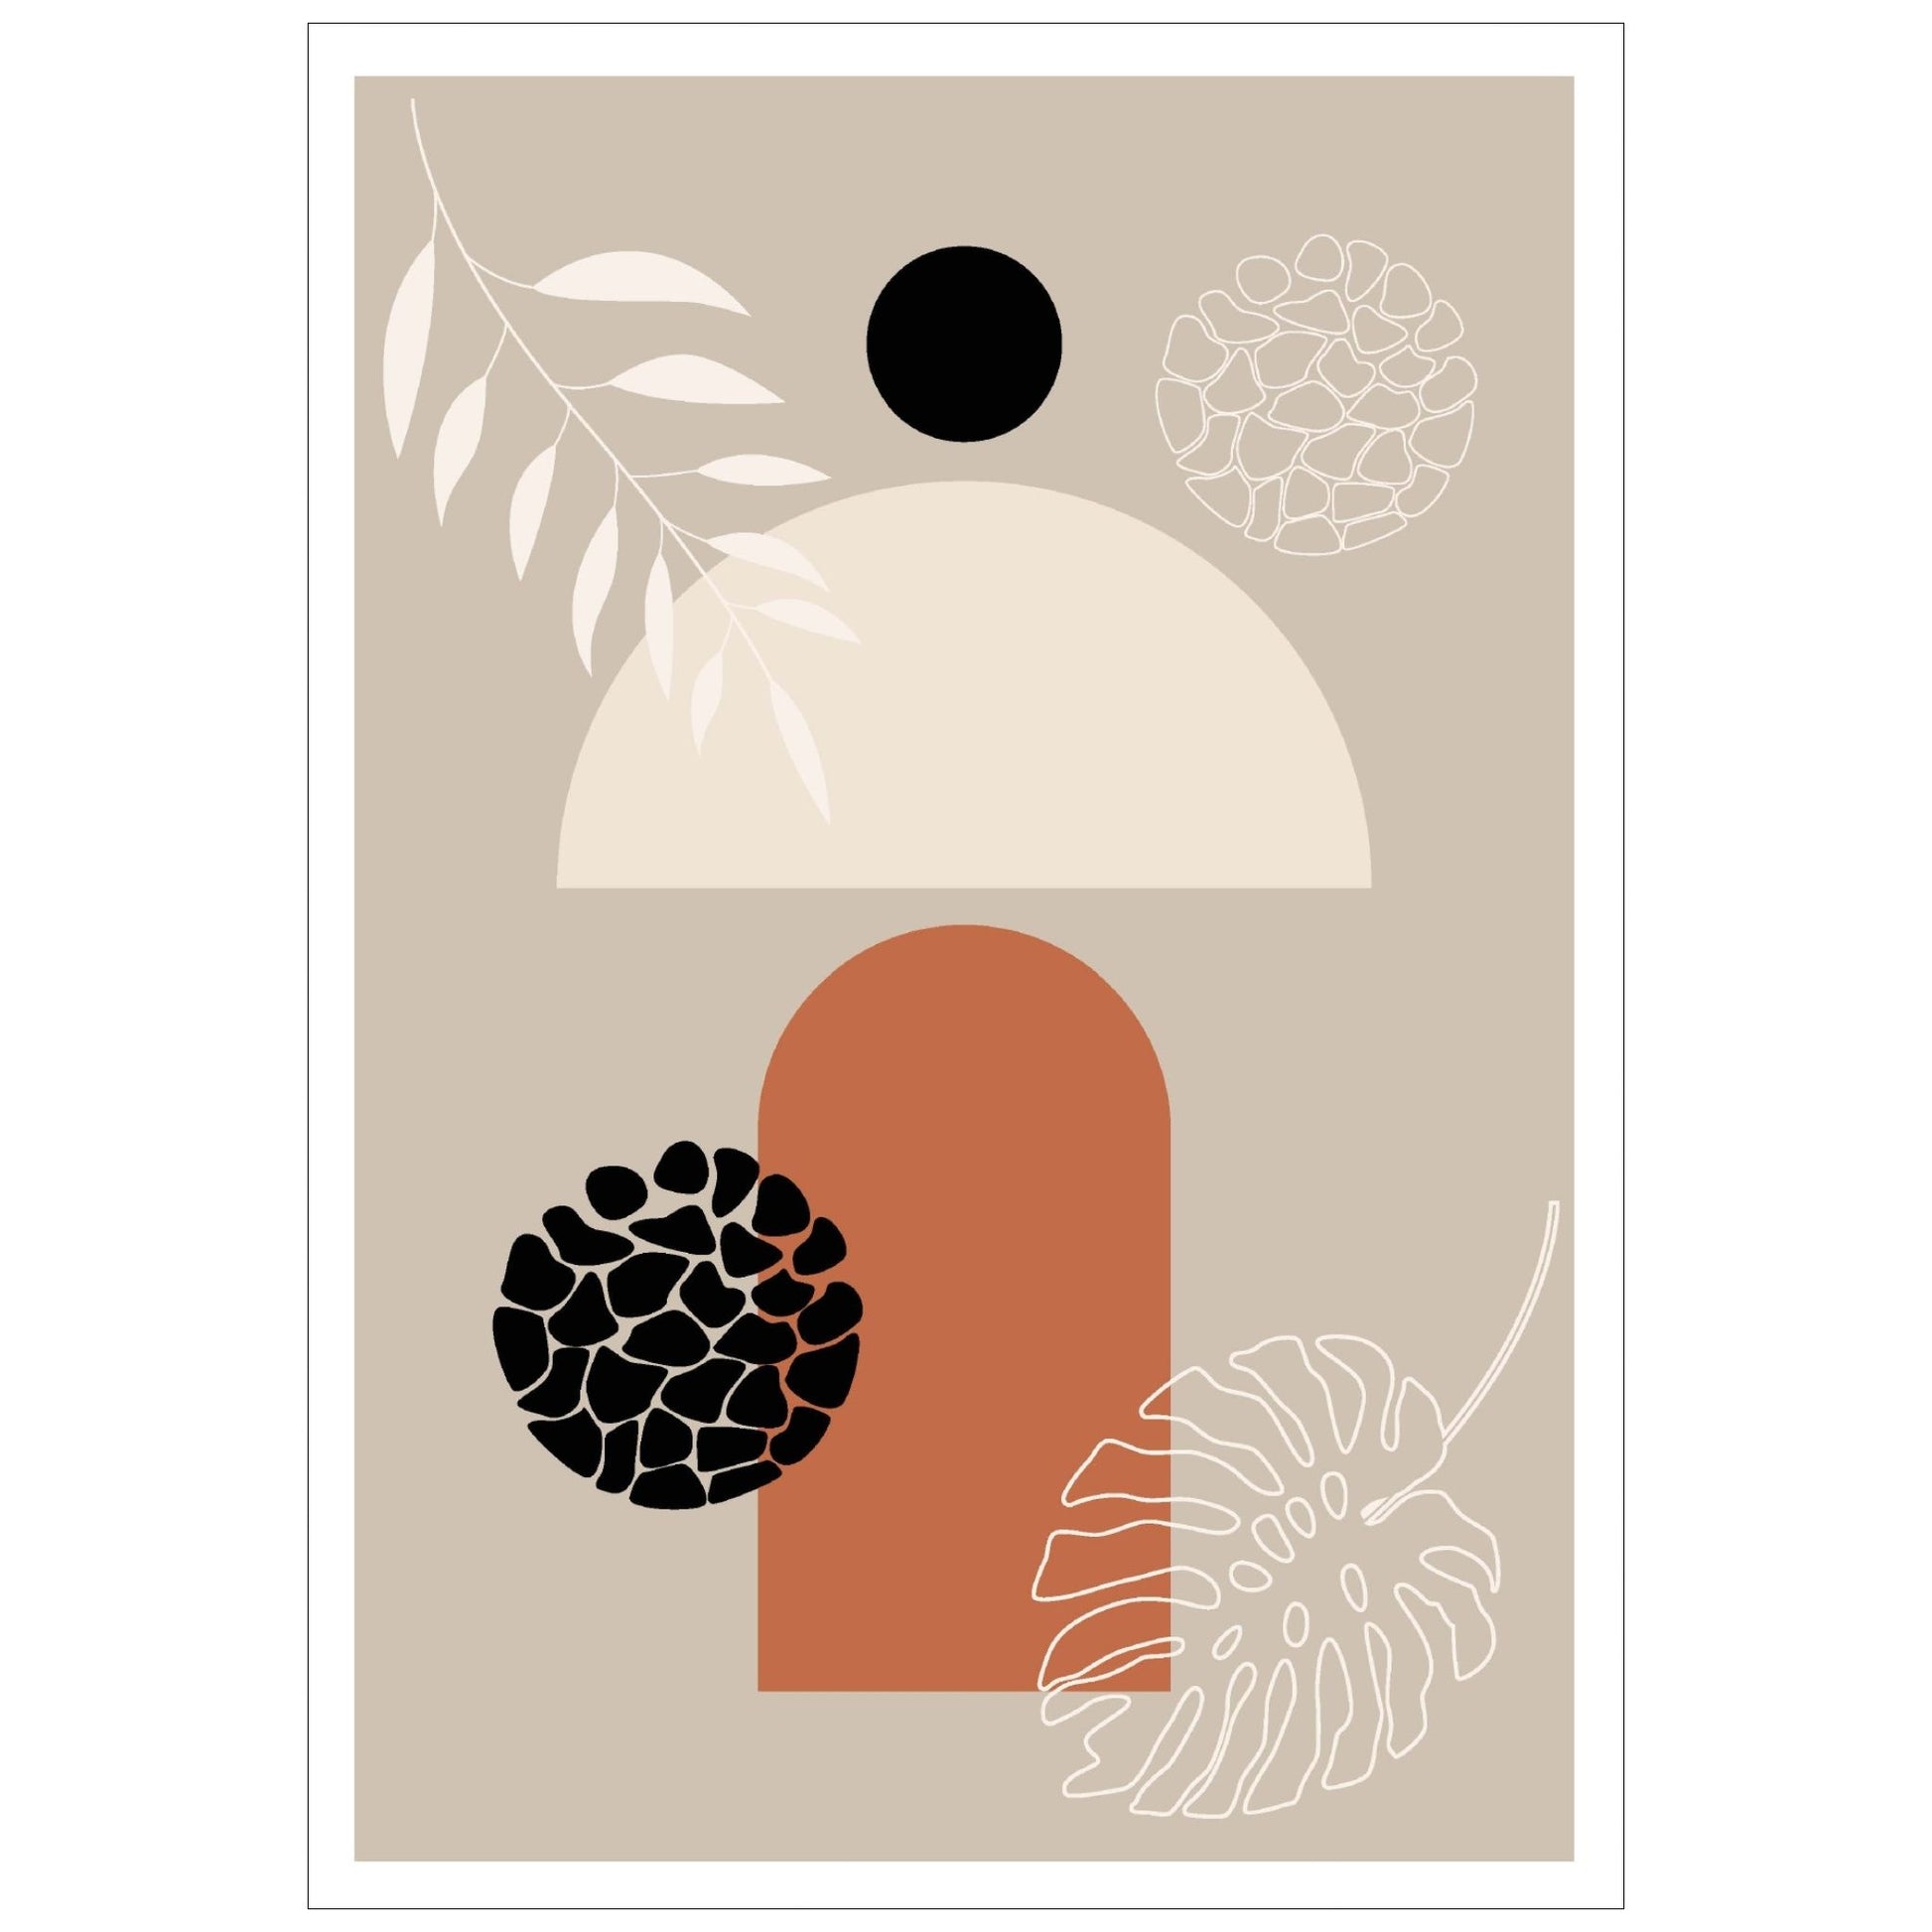 Abstract Shapes No3.3 i sort, beige, rust og hvite fargenyanser. Plakat har en hvit kant om gir dybde og fremhever motivet. 